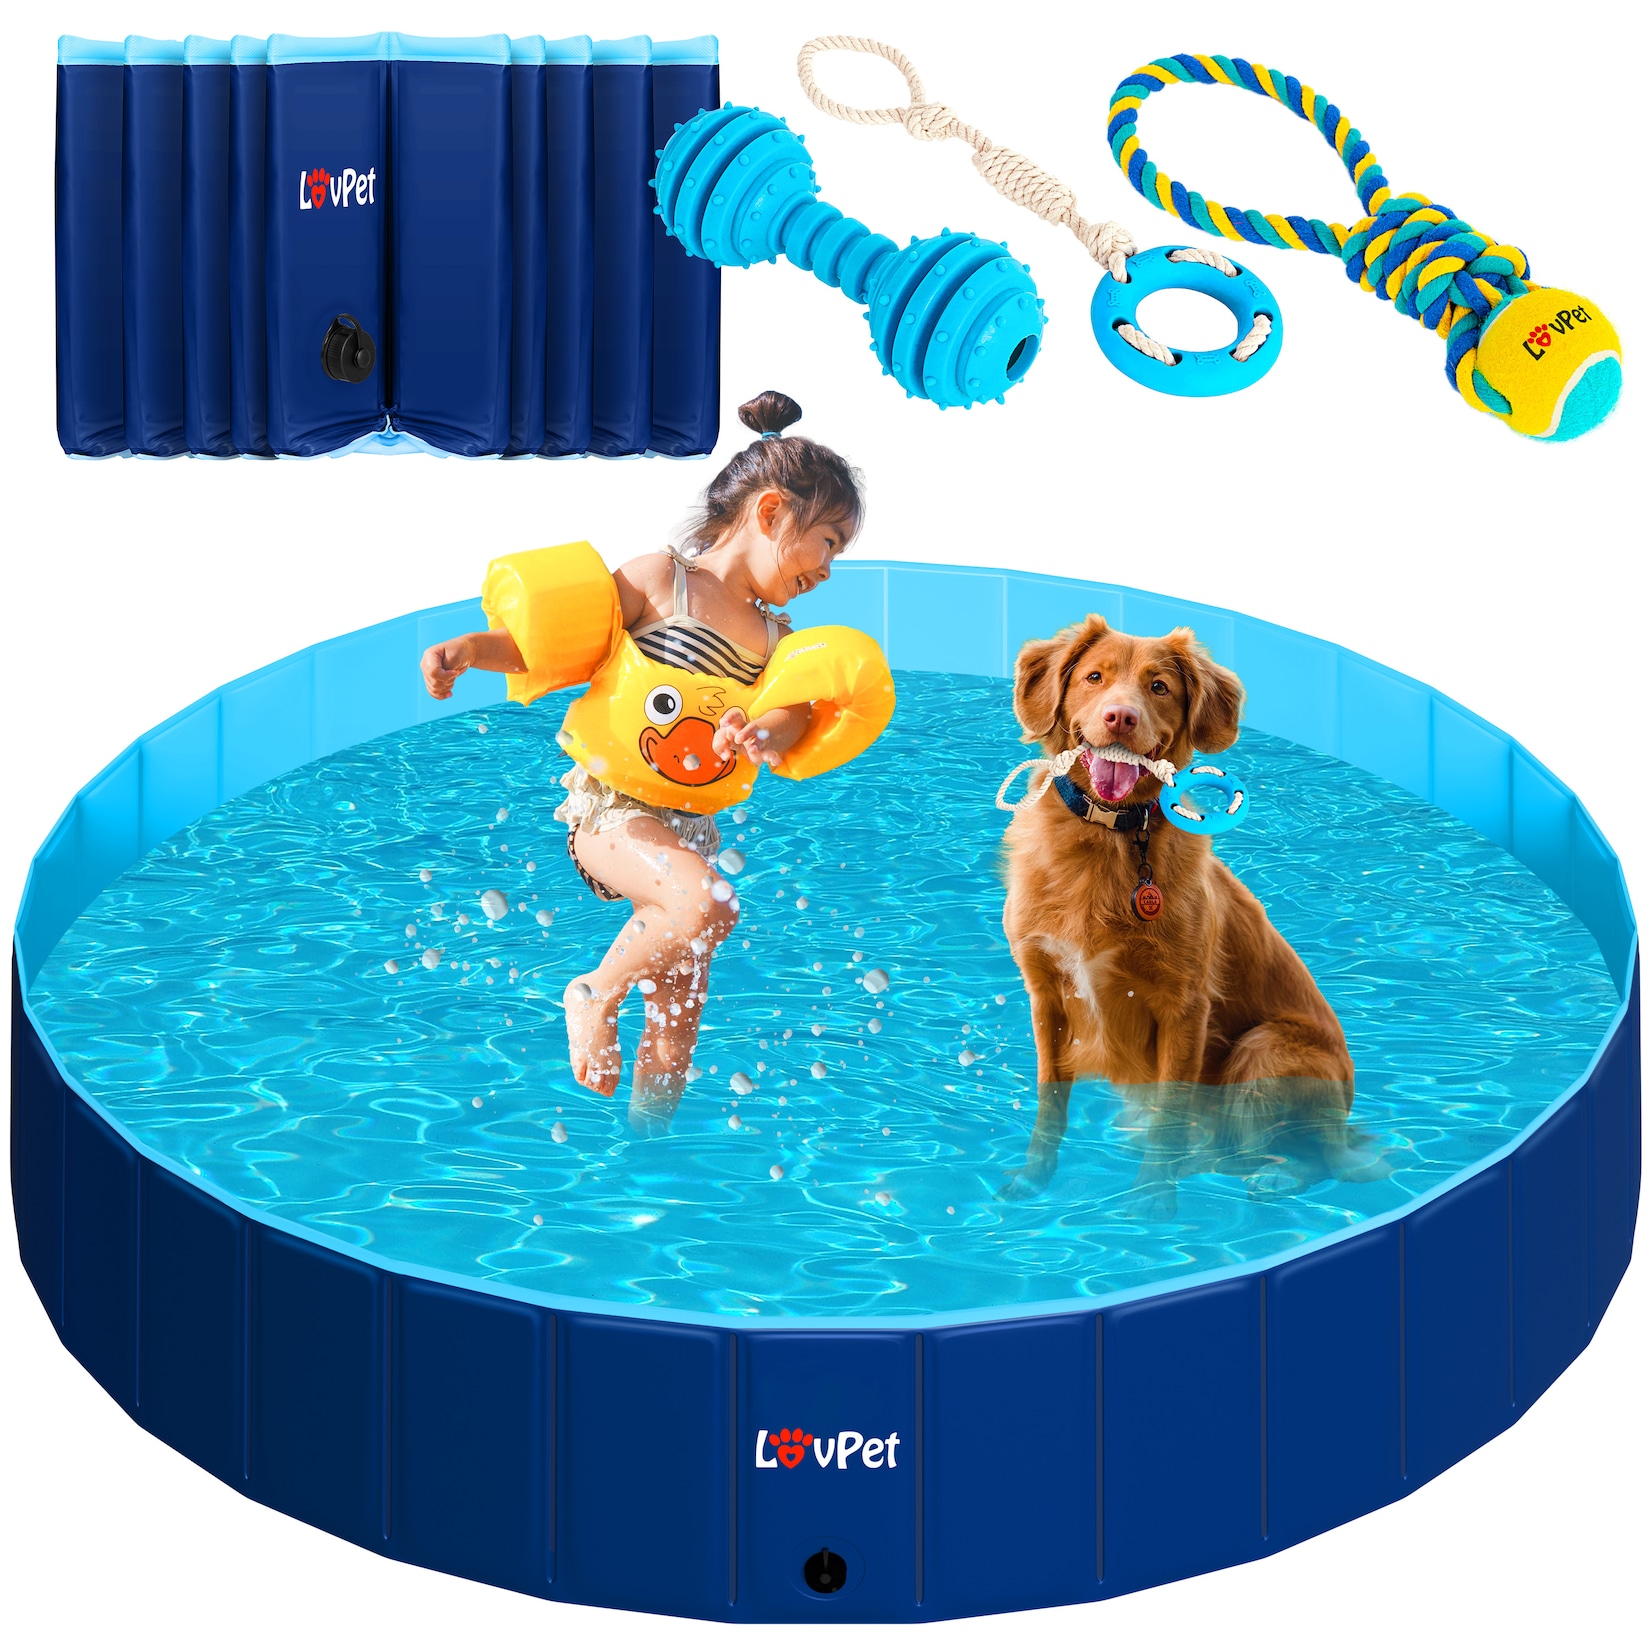 LOVPET® Faltbarer Hundepool Schwimmbecken für Große & Kleine Hunde, inkl. Hundespielzeug Faltbare Hunde Pools Planschbecken für Kinder und Hunde, Hundebadewanne Hundebad